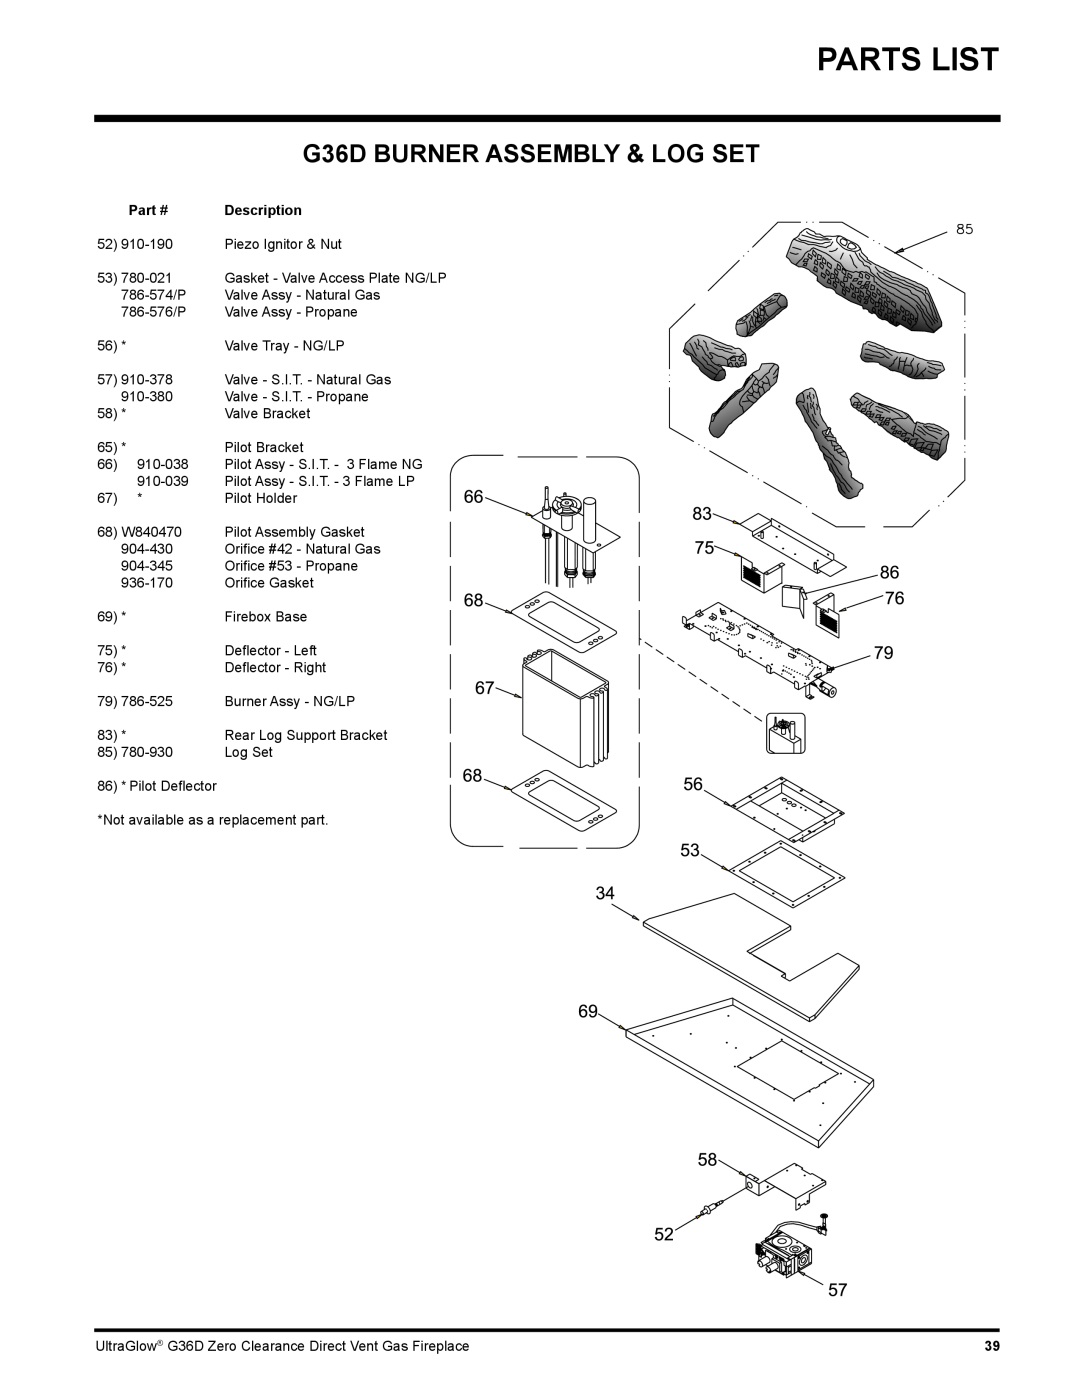 Regency installation manual Parts List, G36D BURNER ASSEMBLY & LOG SET 